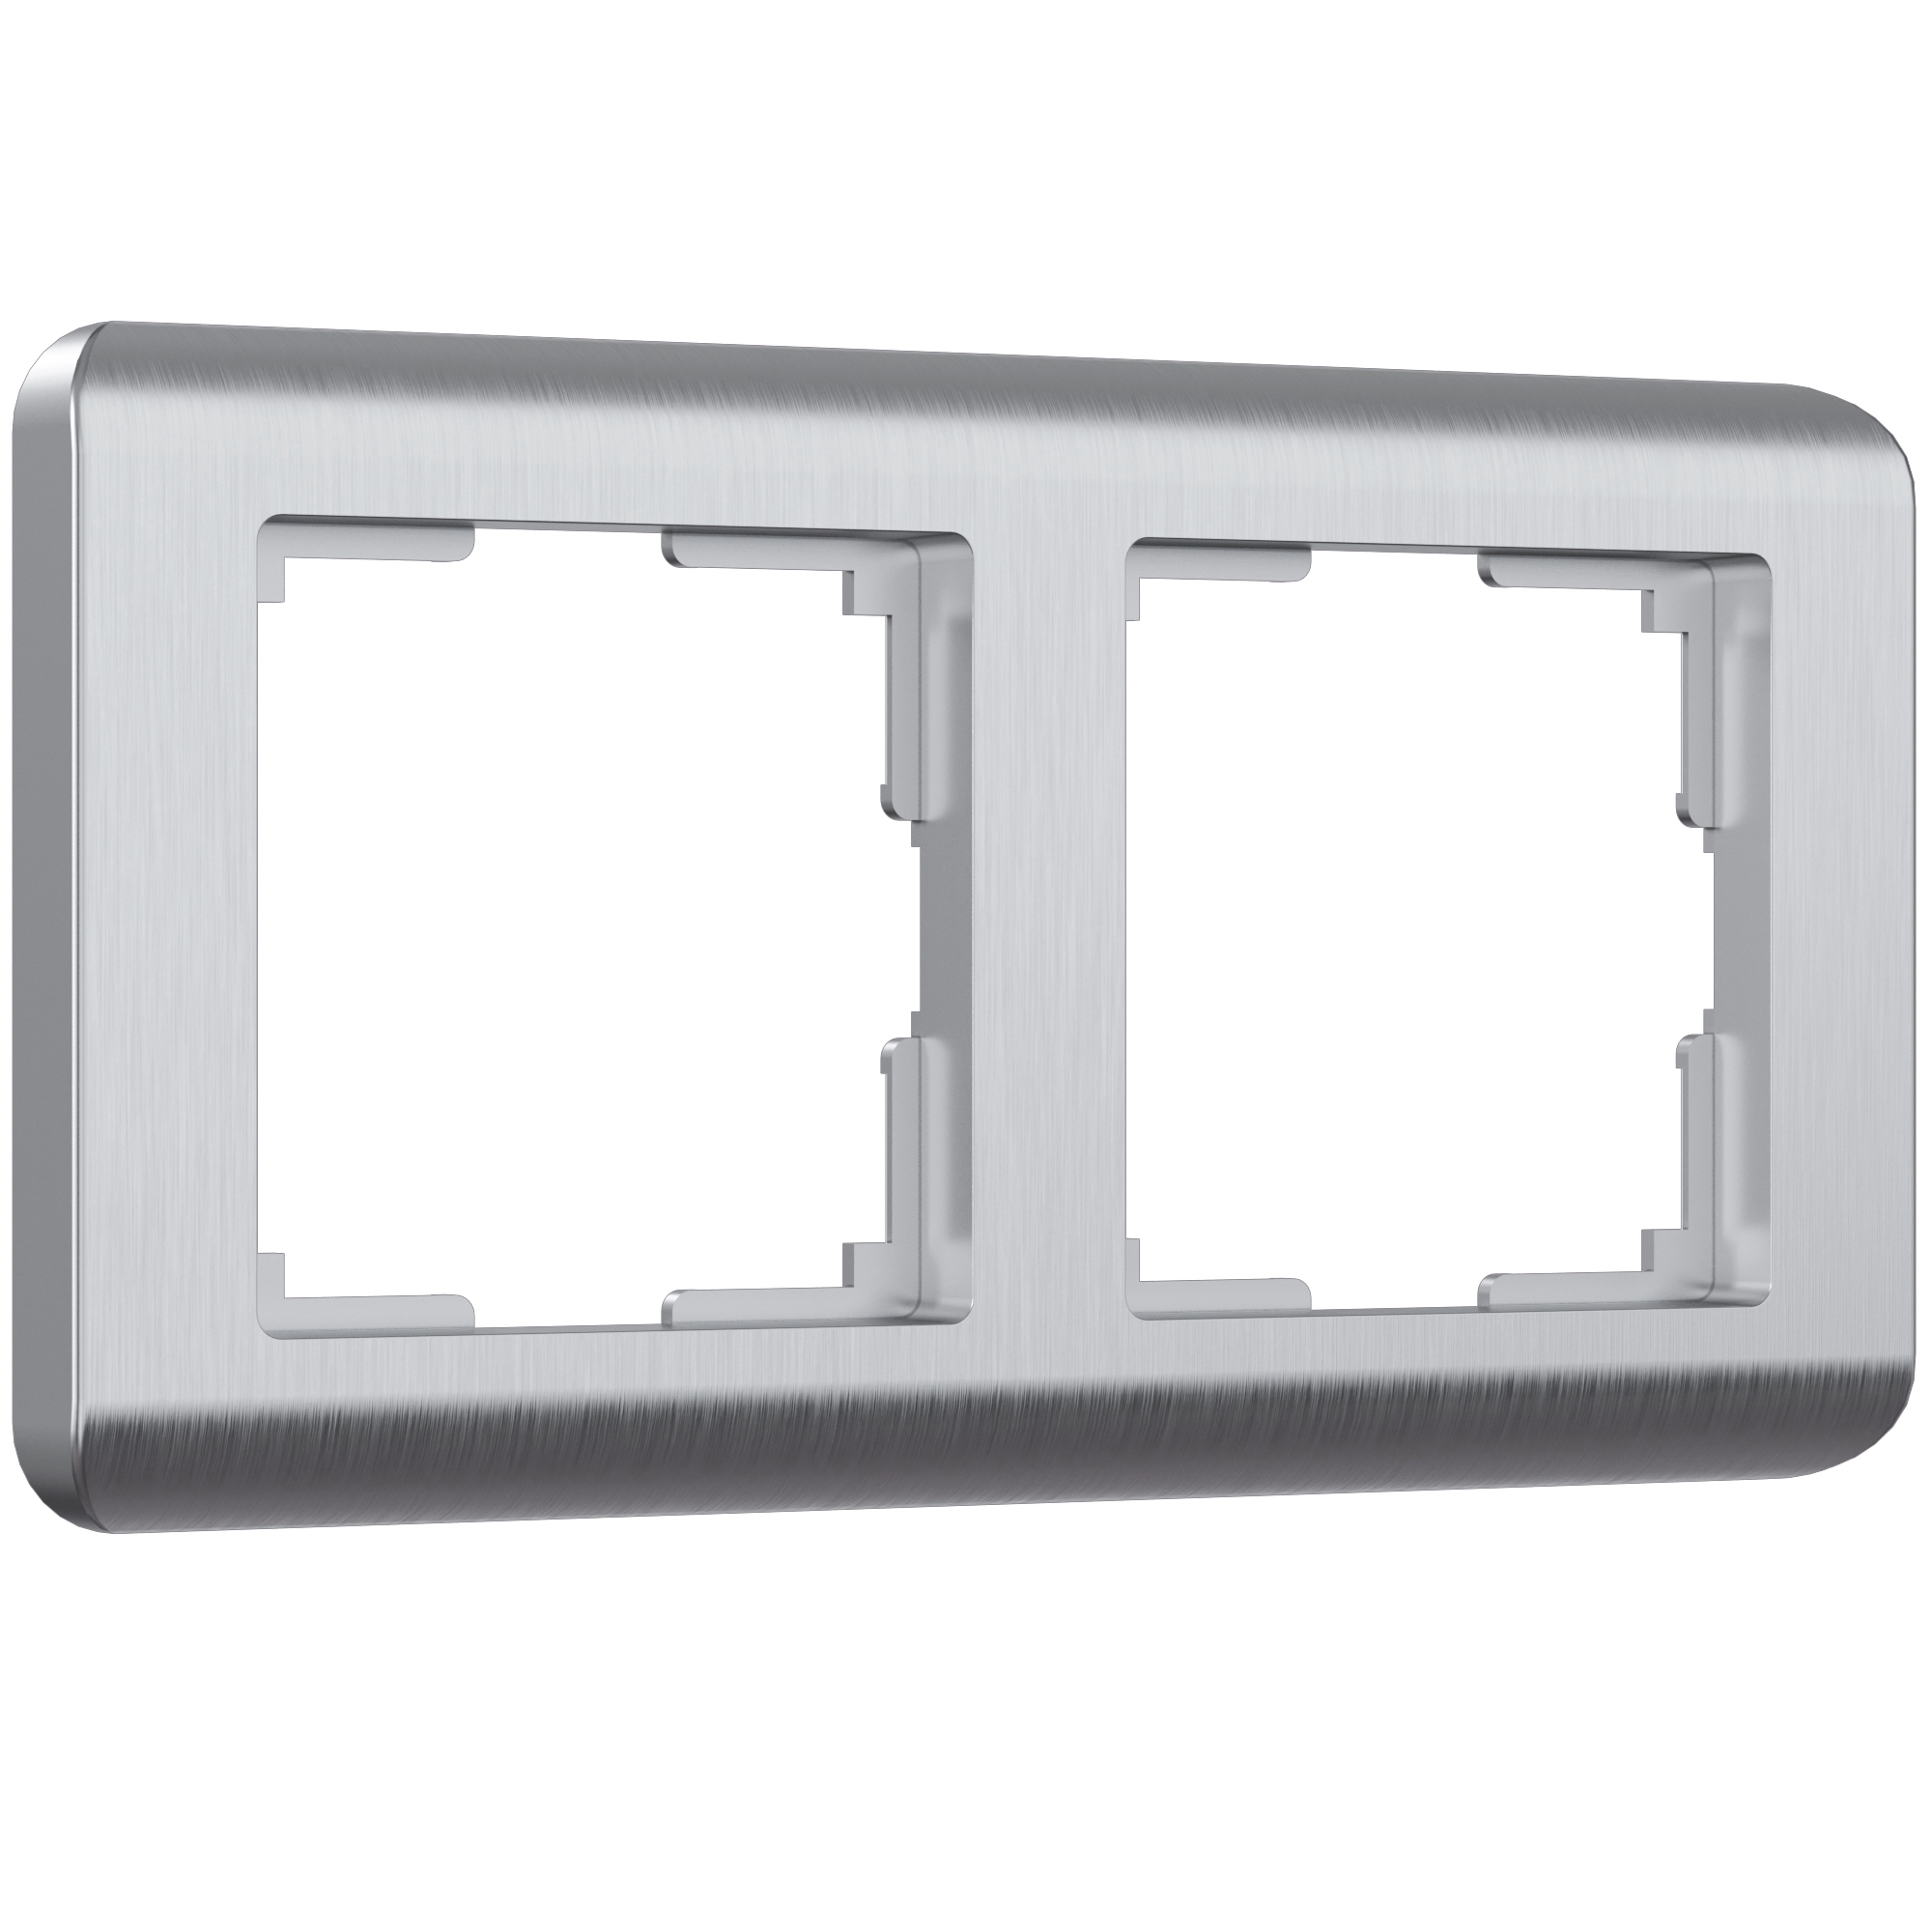 Рамка для розетки / выключателя на 2 поста Werkel W0022106 Stream серебряный пластик рамка на 4 поста серебряный werkel wl12 frame 04 w0042106